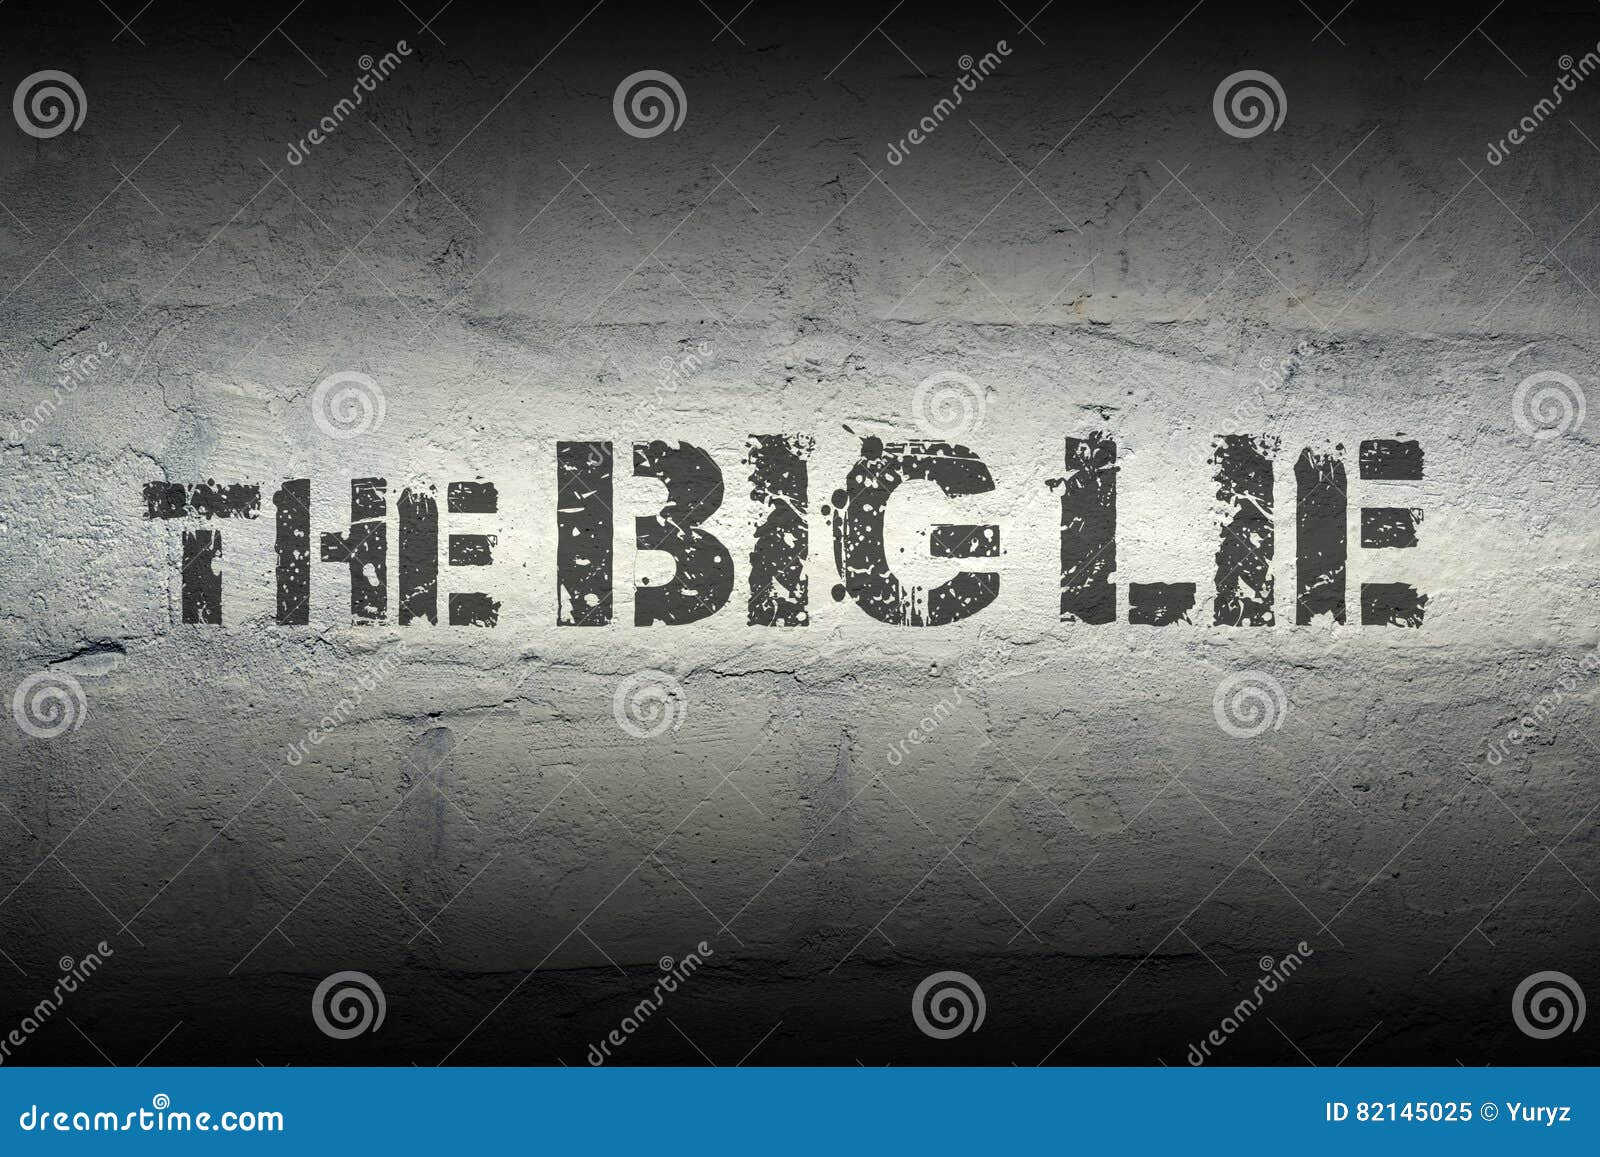 the big lie gr